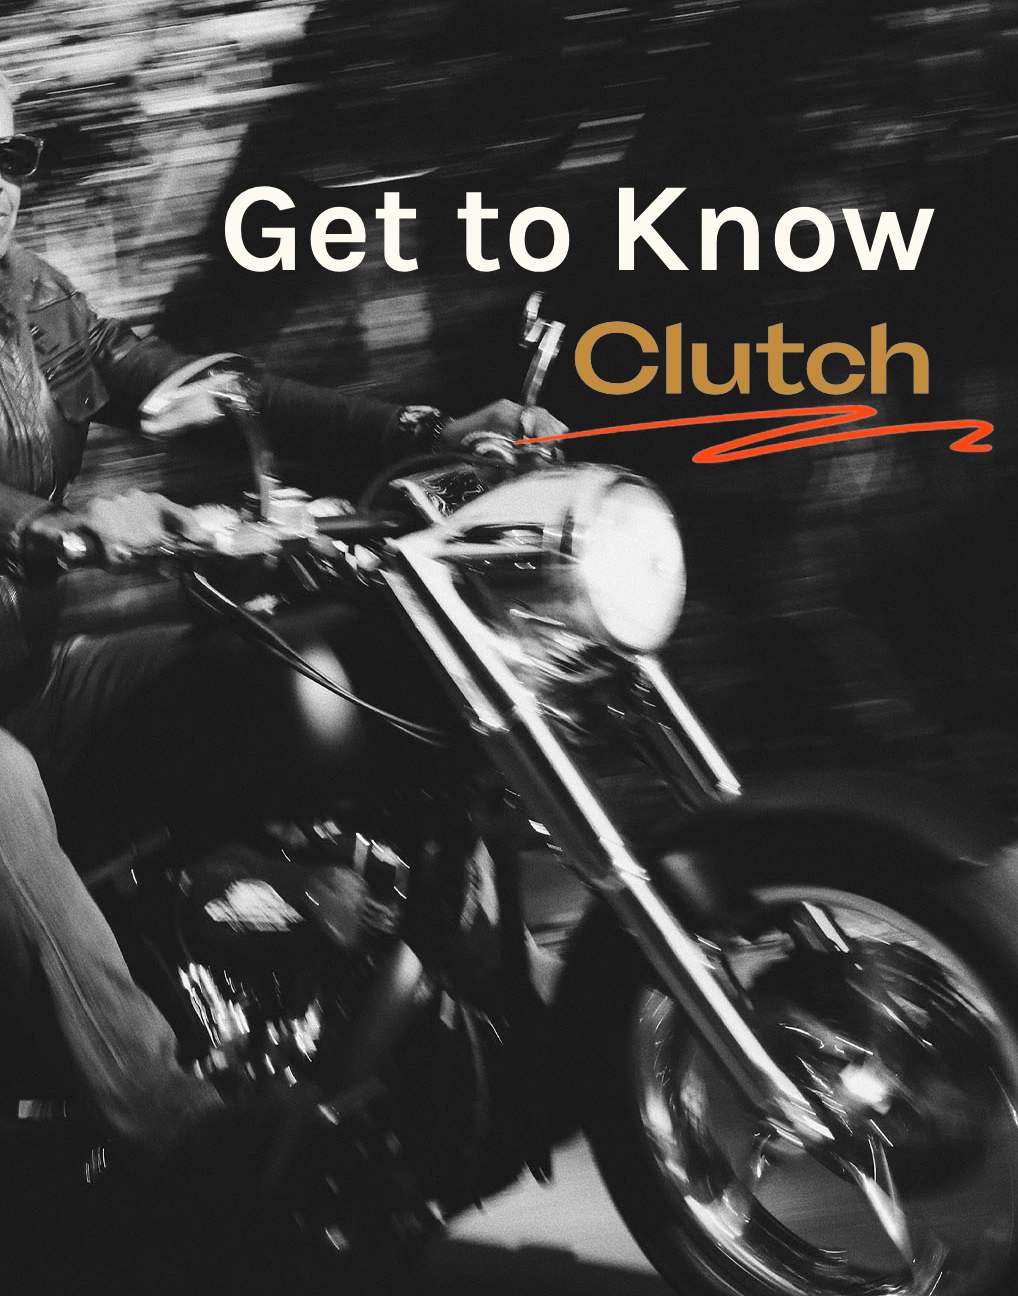 Get to know clutch.jpg__PID:d8e68704-67fb-4e9f-a6e1-0f57aa2457ba